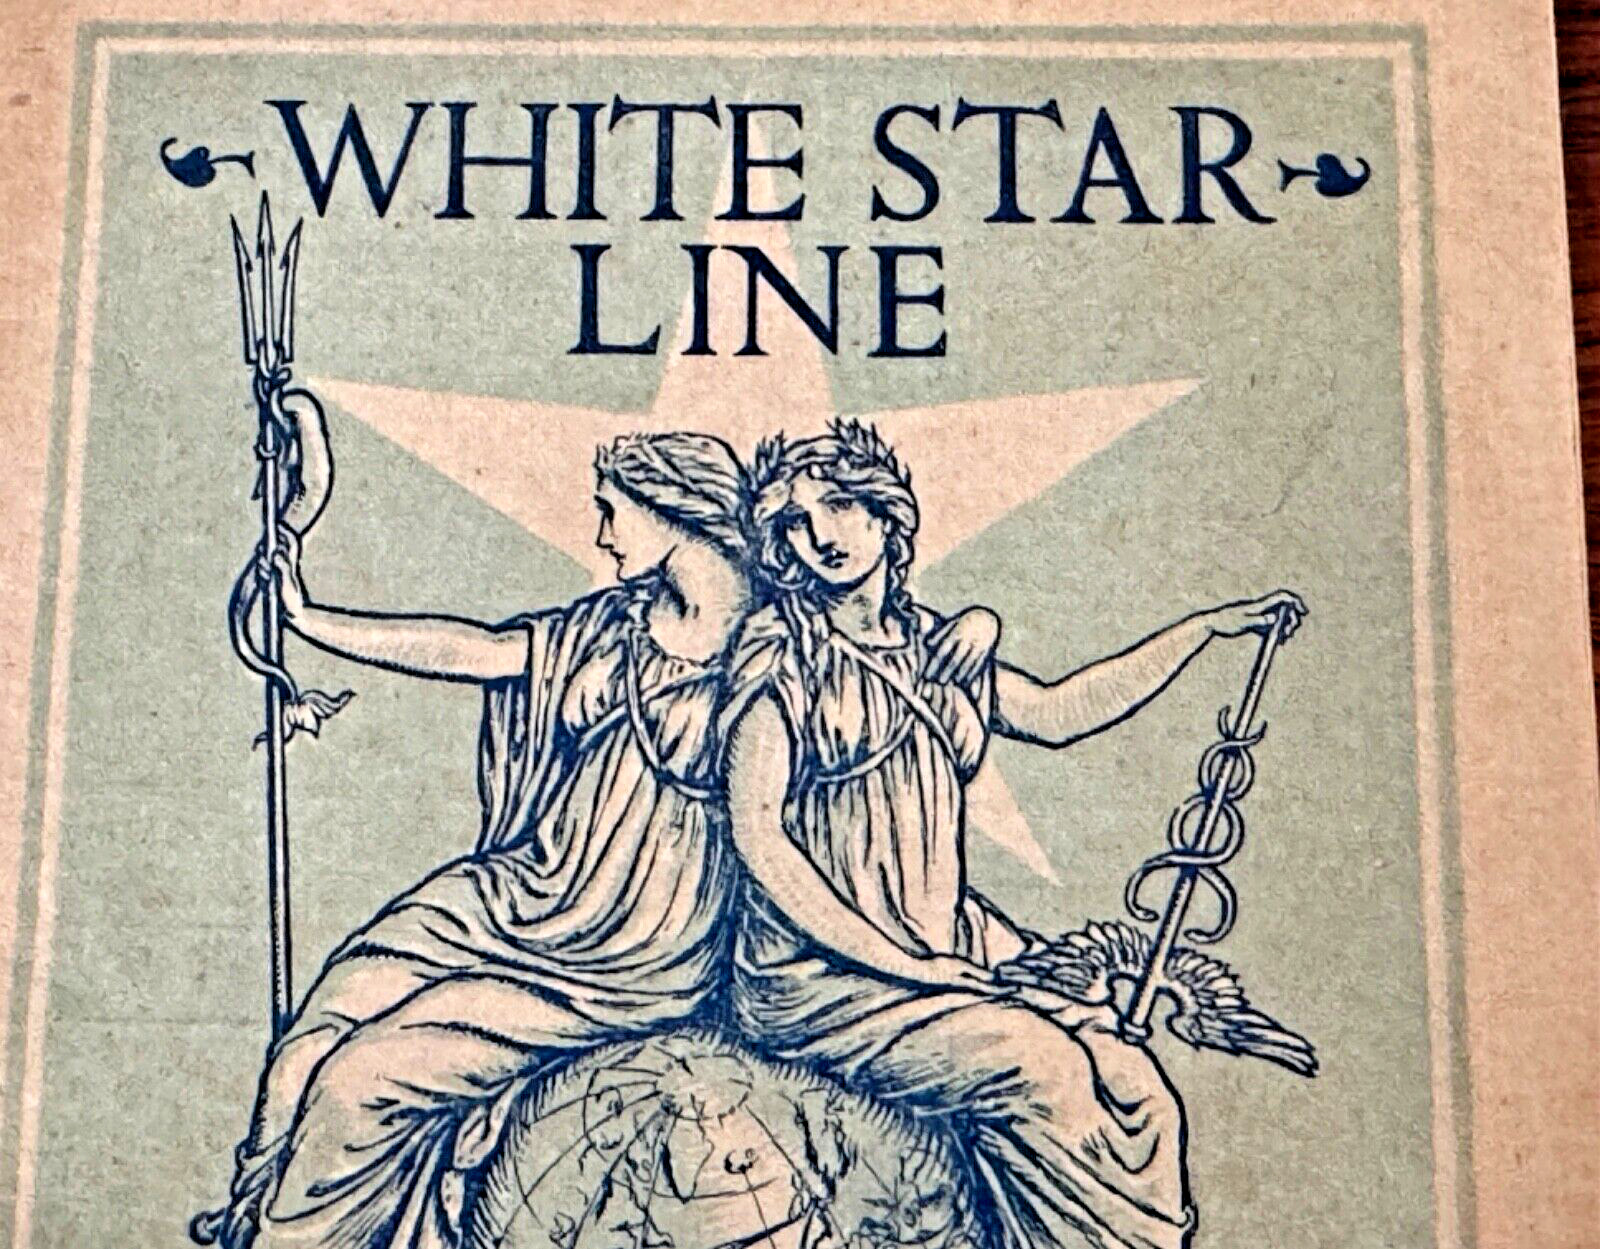 1905 White Star Line Ocean Liner Ship Passenger List Book Document Titanic Rare